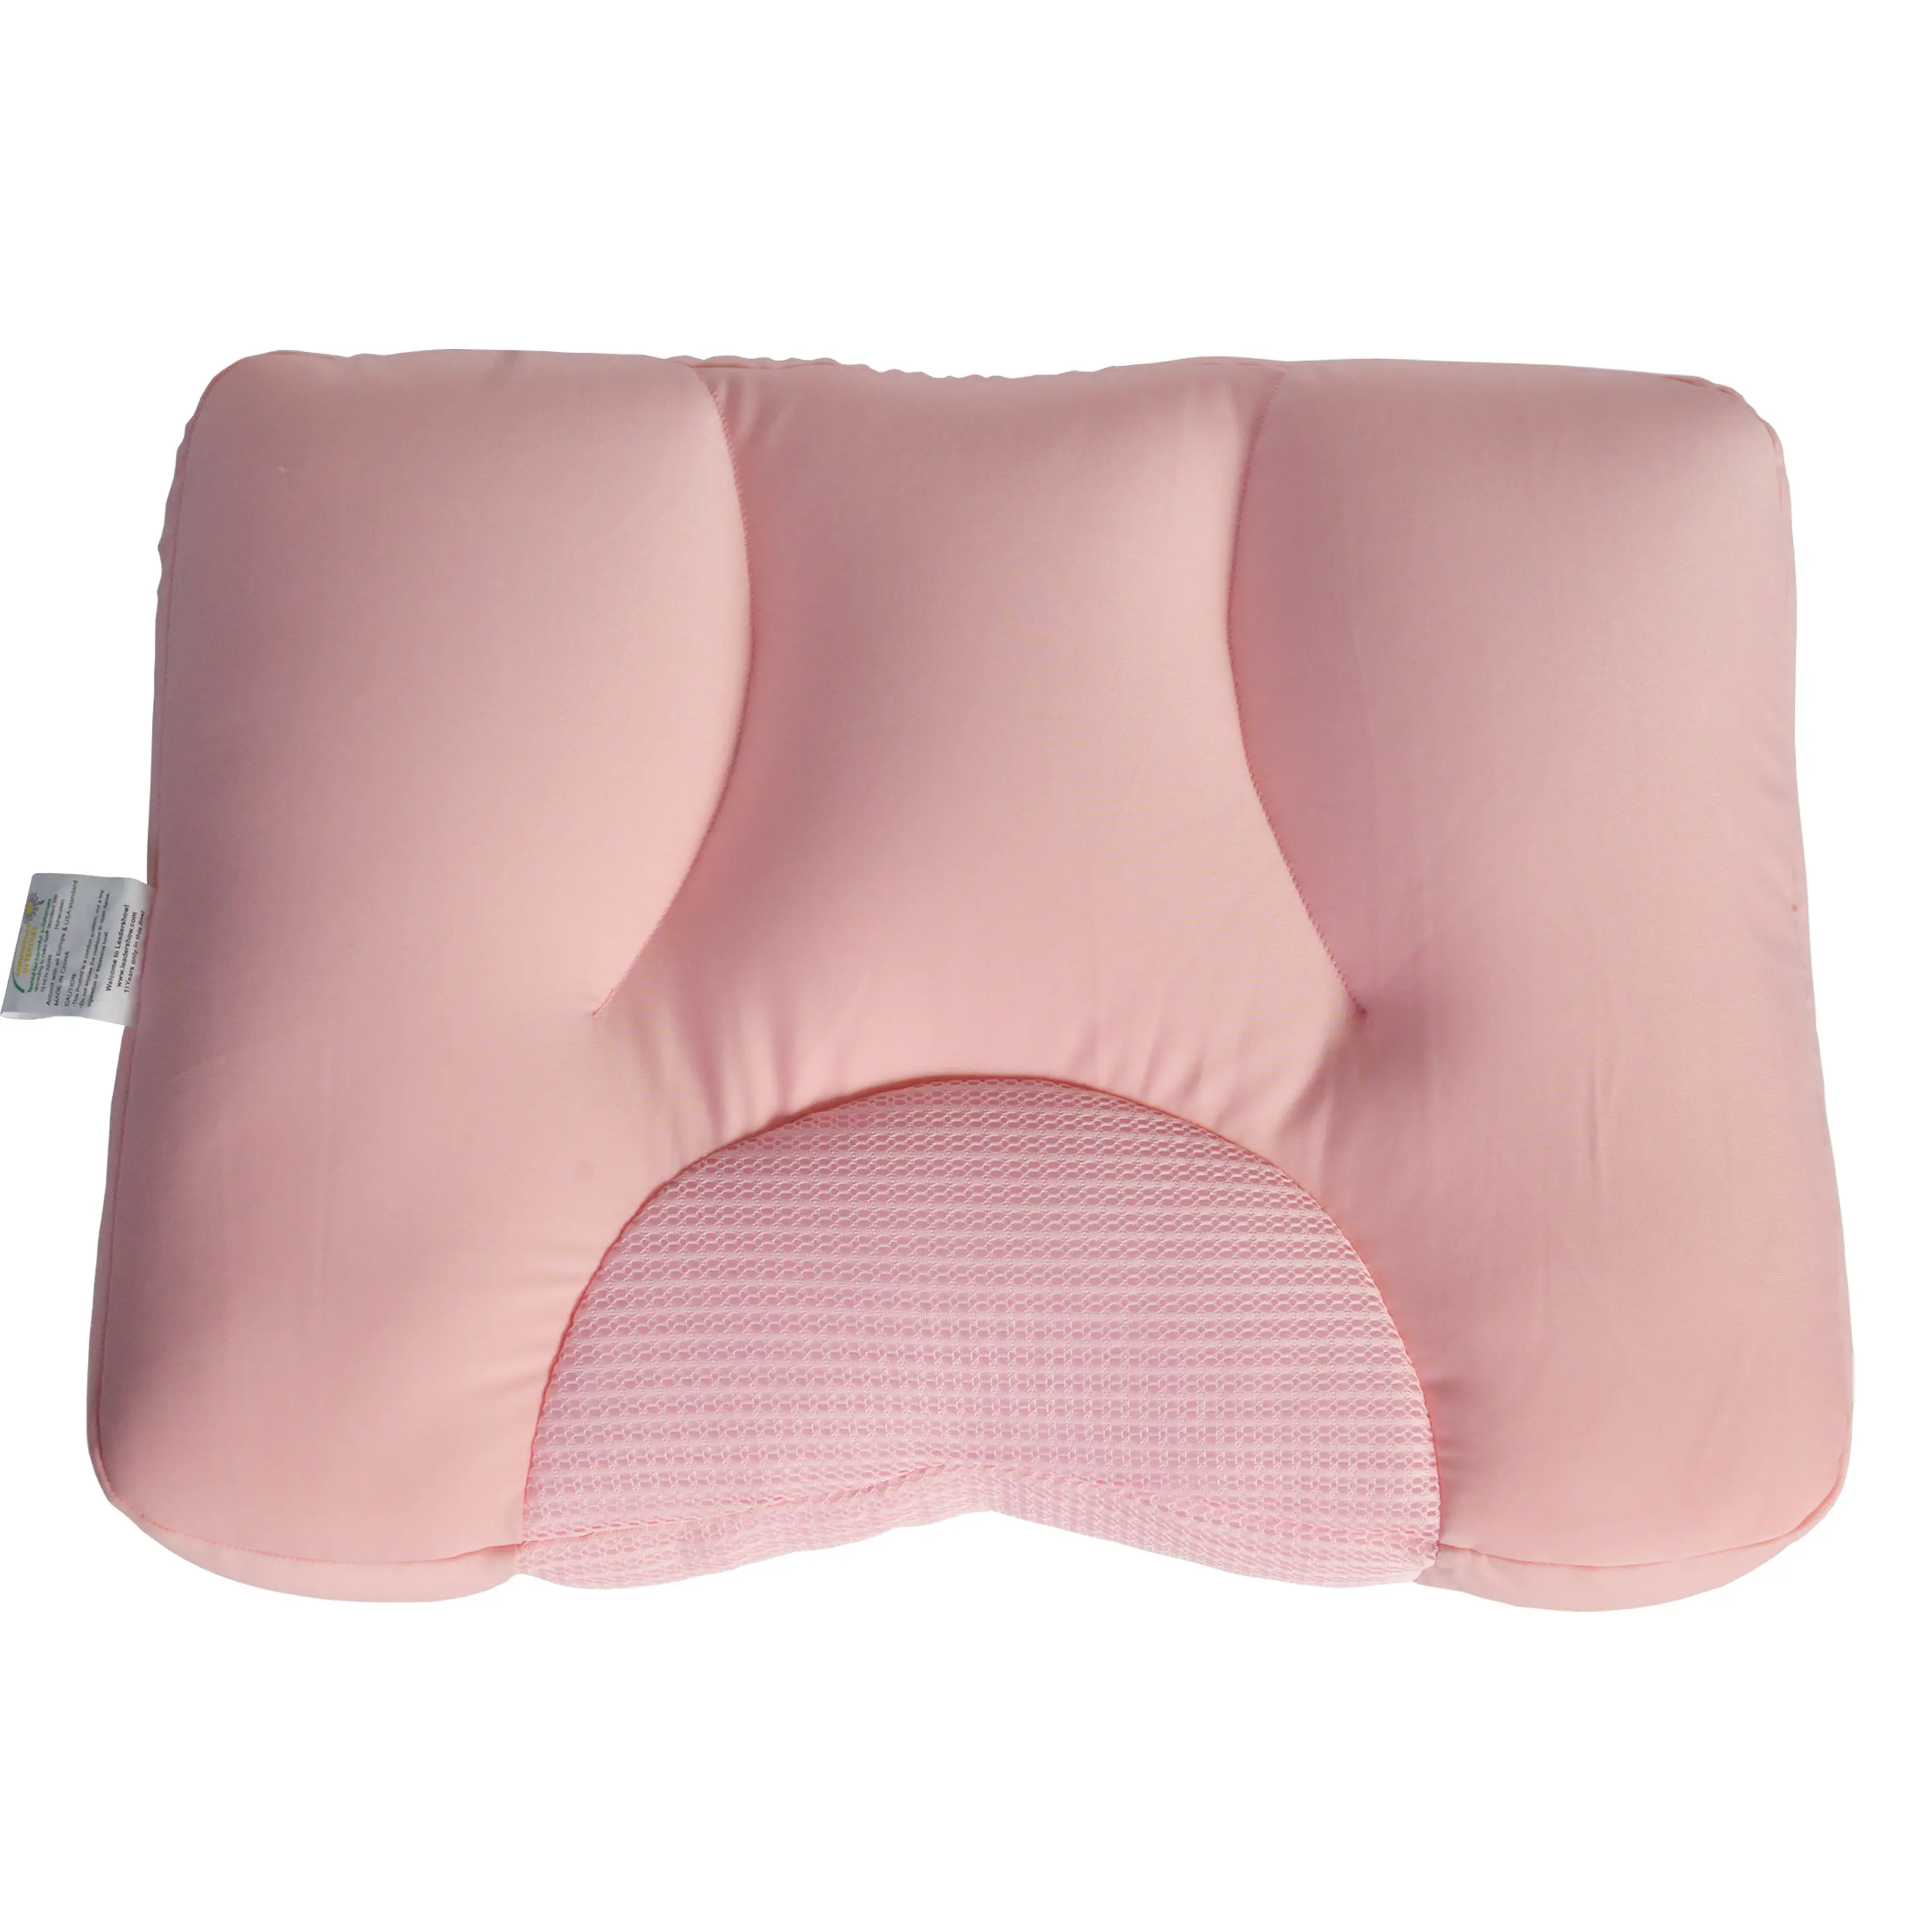 首と肩のための頸部枕、カスタマイズされたサイドバックのためのマイクロビーズサイドスリーパー枕人間工学に基づいたネックサポート枕